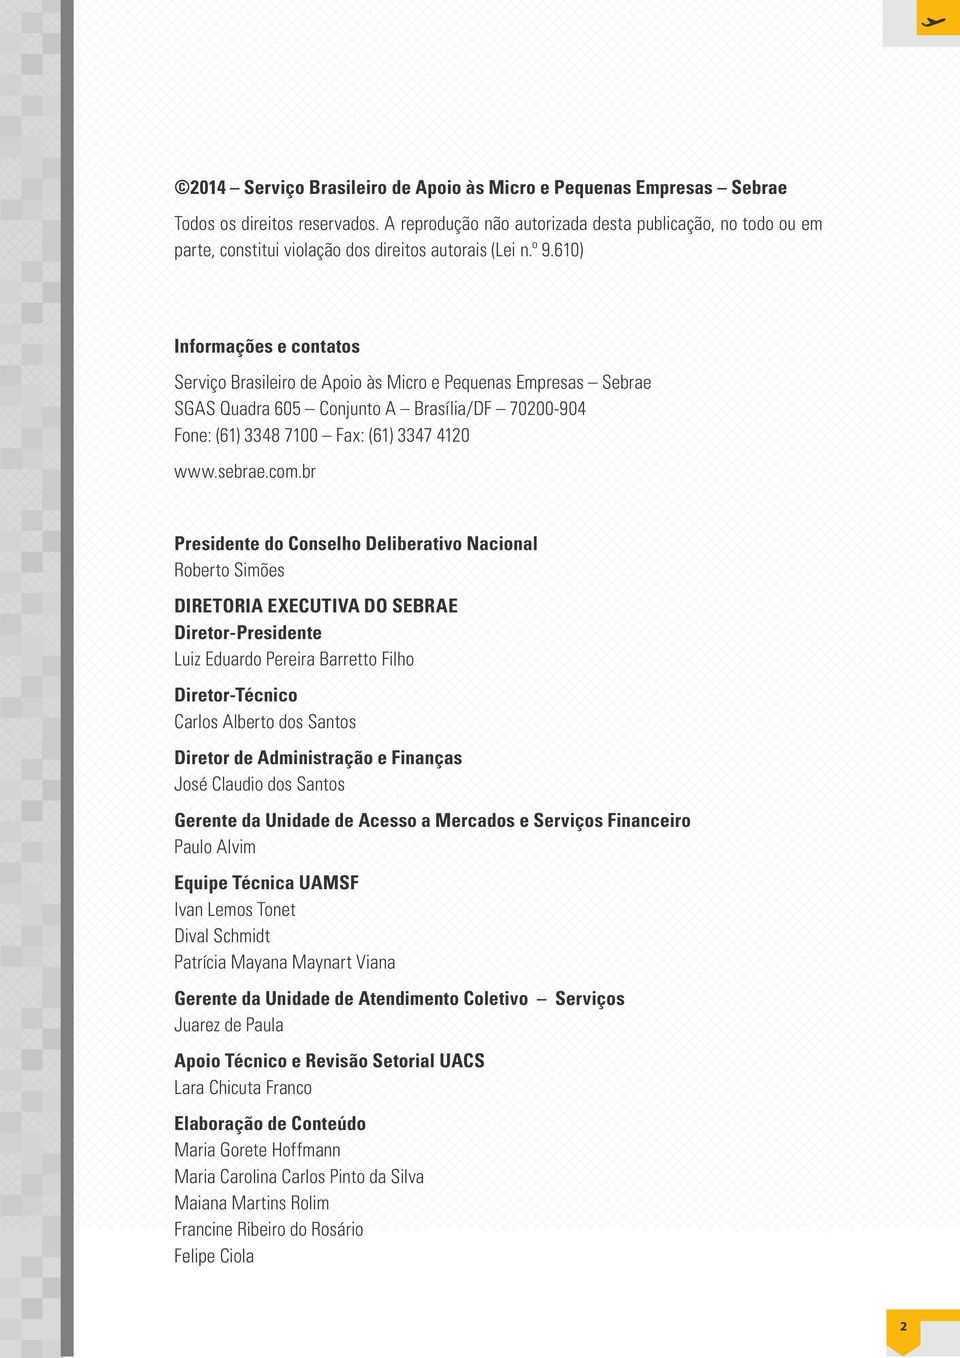 610) Informações e contatos Serviço Brasileiro de Apoio às Micro e Pequenas Empresas Sebrae SGAS Quadra 605 Conjunto A Brasília/DF 70200-904 Fone: (61) 3348 7100 Fax: (61) 3347 4120 www.sebrae.com.